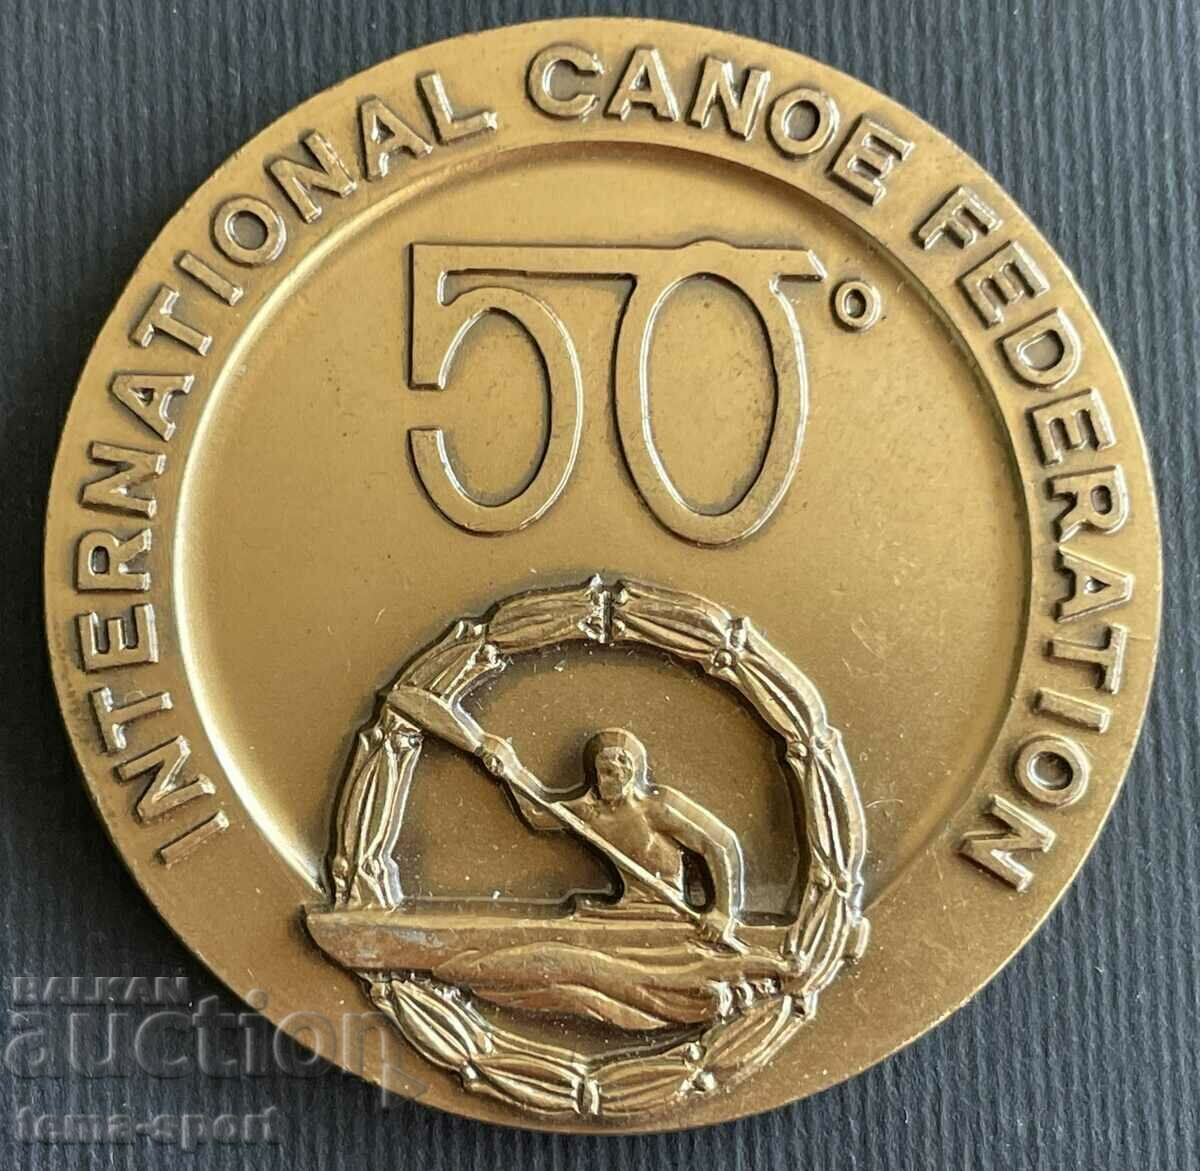 32 Πλακέτα 50 ετών. Διεθνής Ομοσπονδία Κανόε 1974